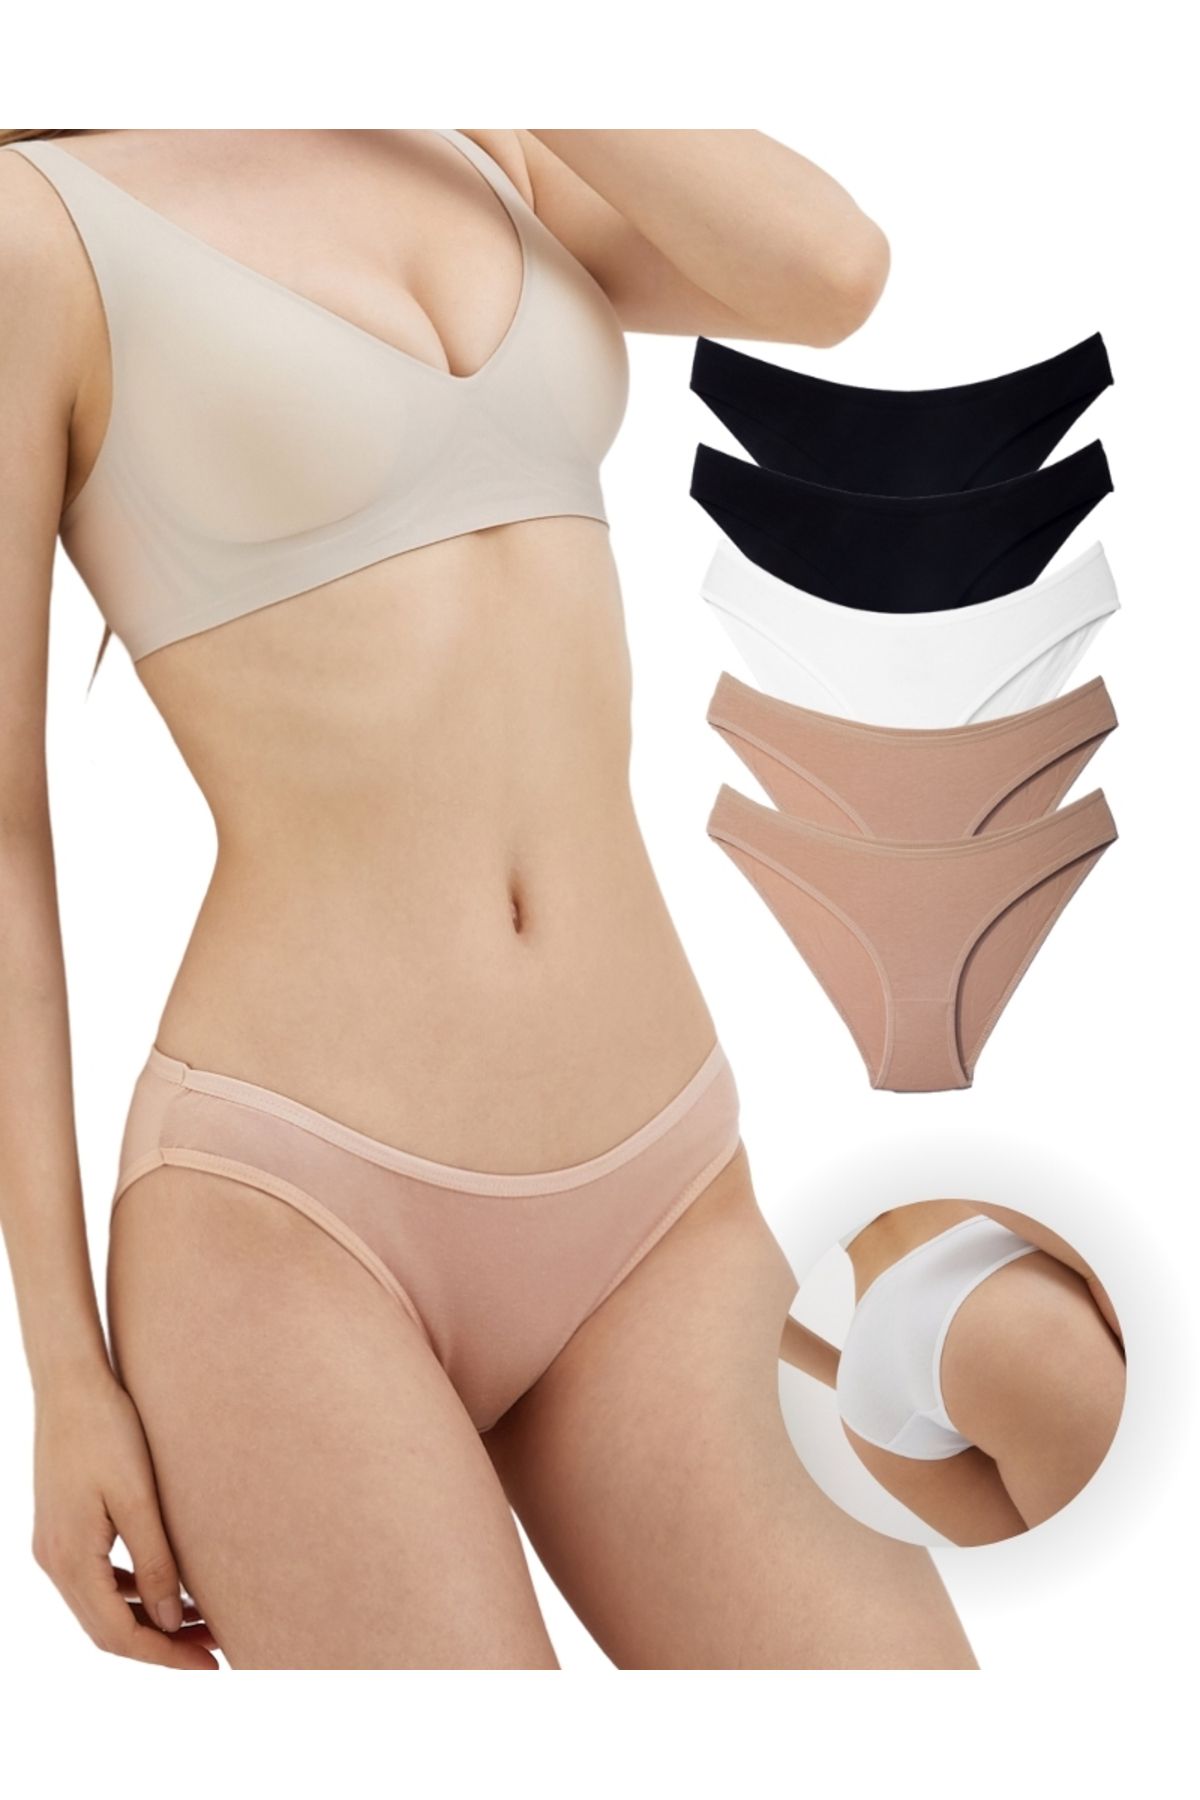 ALYA UNDERWEAR Kadın Bikini Kesim Pamuklu Külot 1 Ad. Beyaz 2 Ad. Siyah 2 Ad. Ten (S, M, L, XL, 2XL)